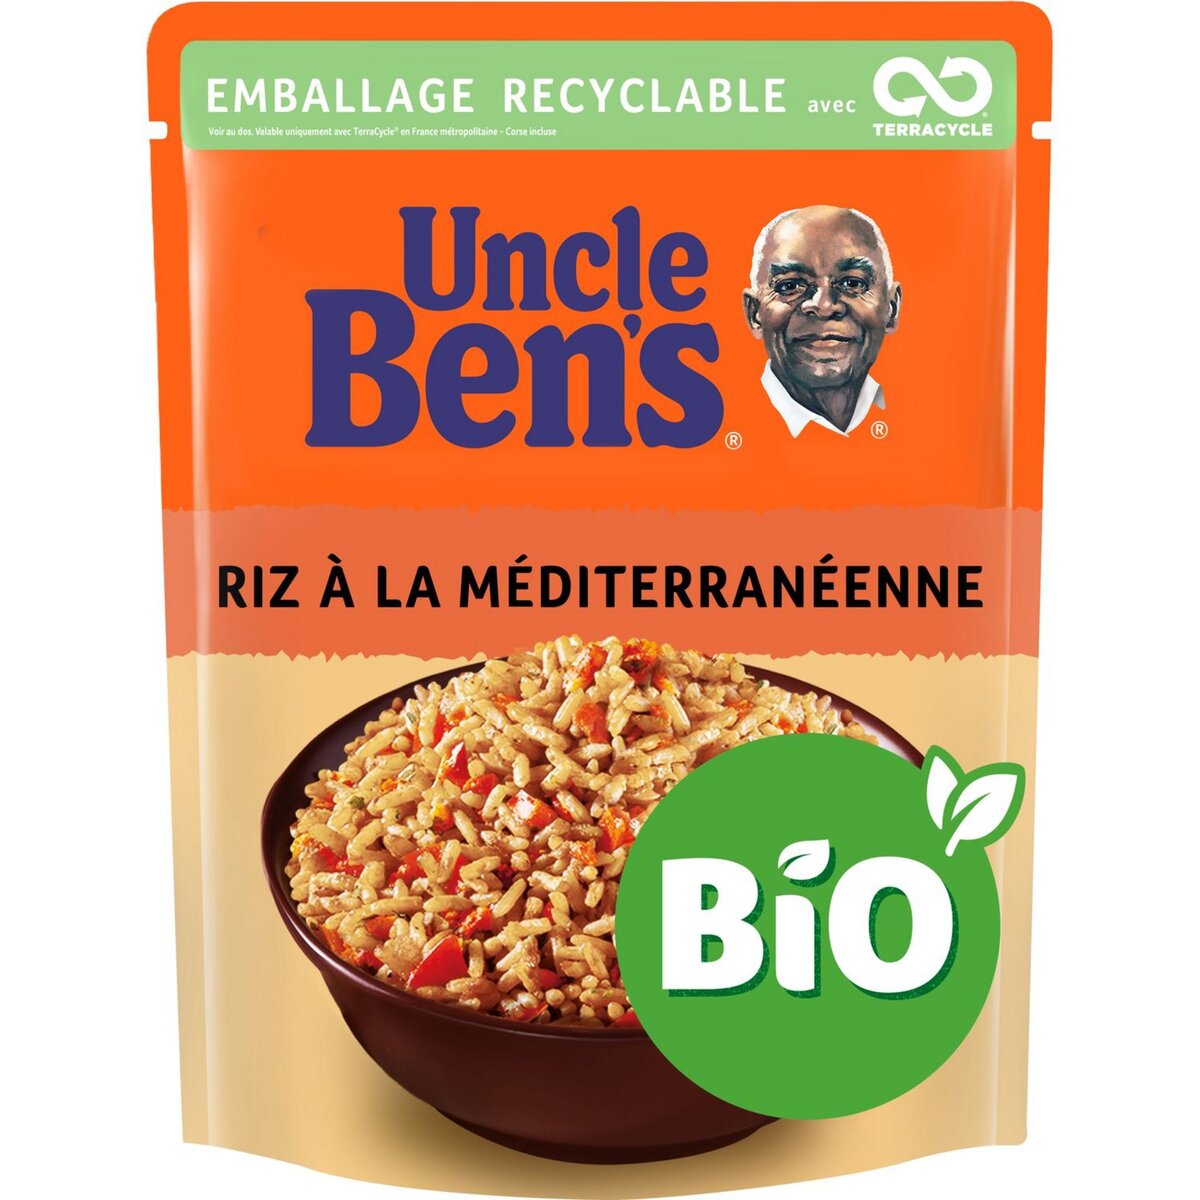 BEN'S ORIGINAL Riz à la méditerranéenne bio sachet recyclable prêt en 2 min 240g